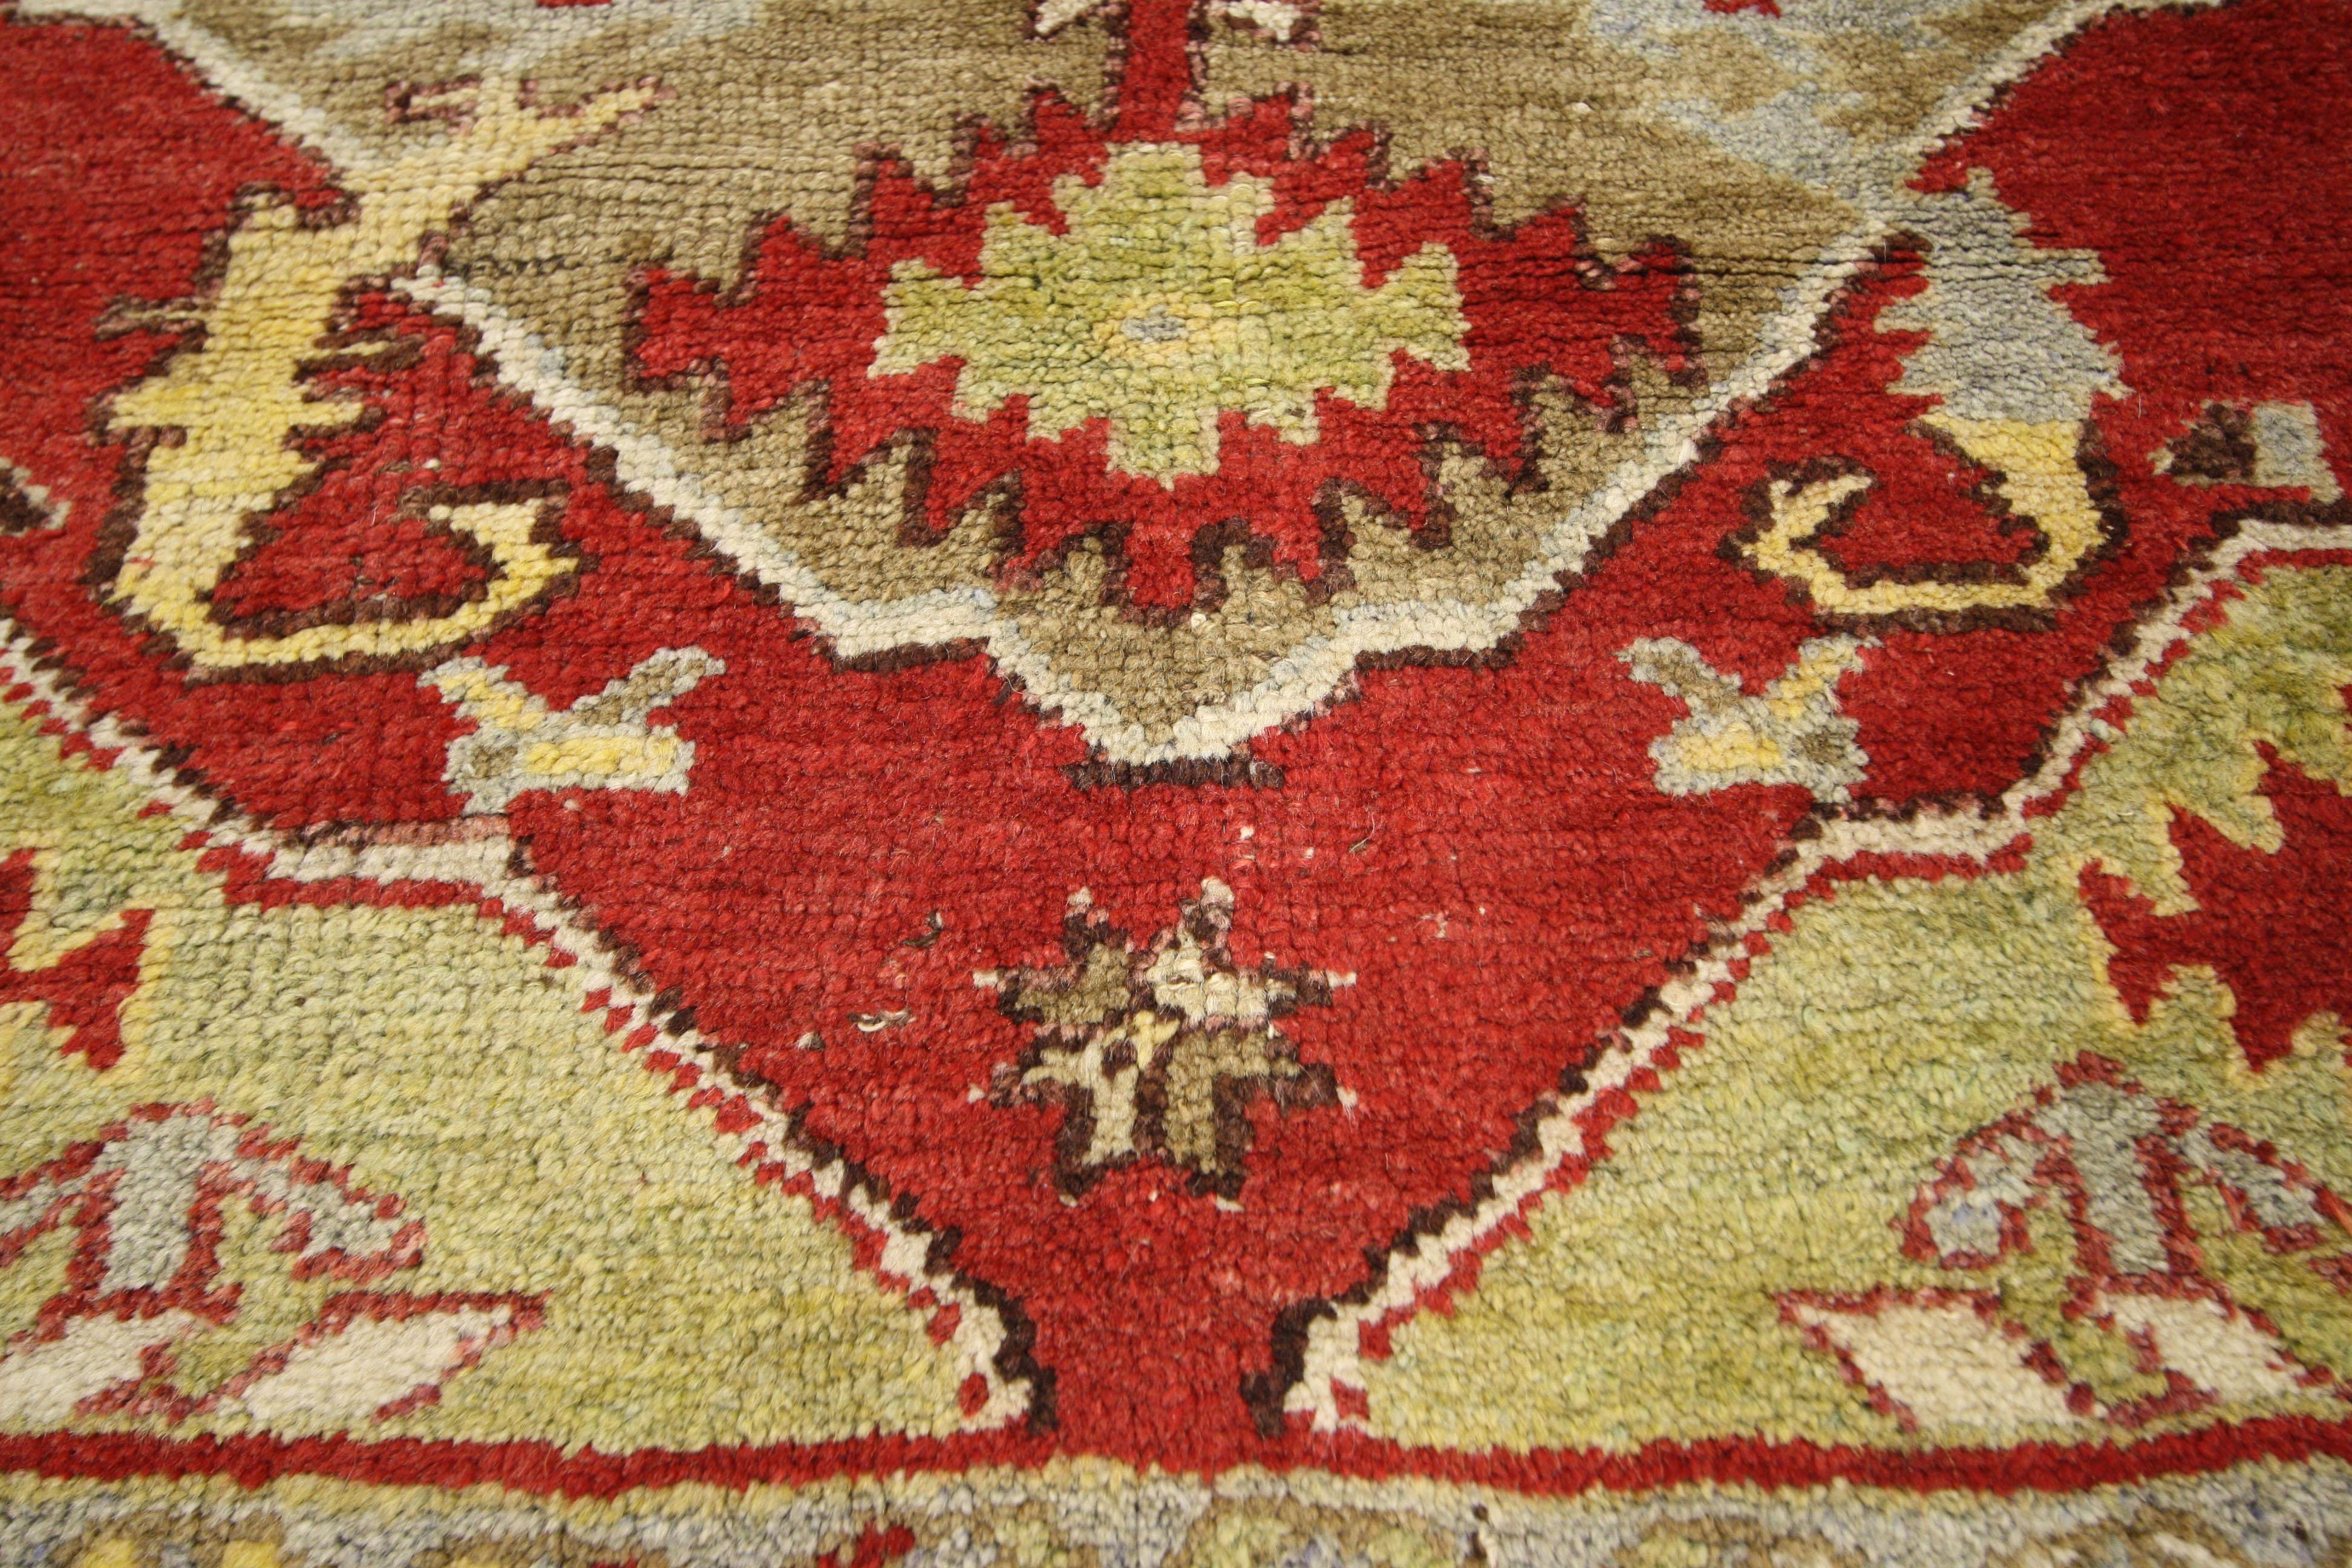 52323, türkischer Oushak-Teppich im Barock-Stil, kleiner quadratischer Akzentteppich. Dieser kleine, handgeknüpfte türkische Oushak-Teppich aus Wolle zeigt ein Amulett-Medaillon mit gezackten Anhängern und vier geschwungenen Akanthusblättern, die